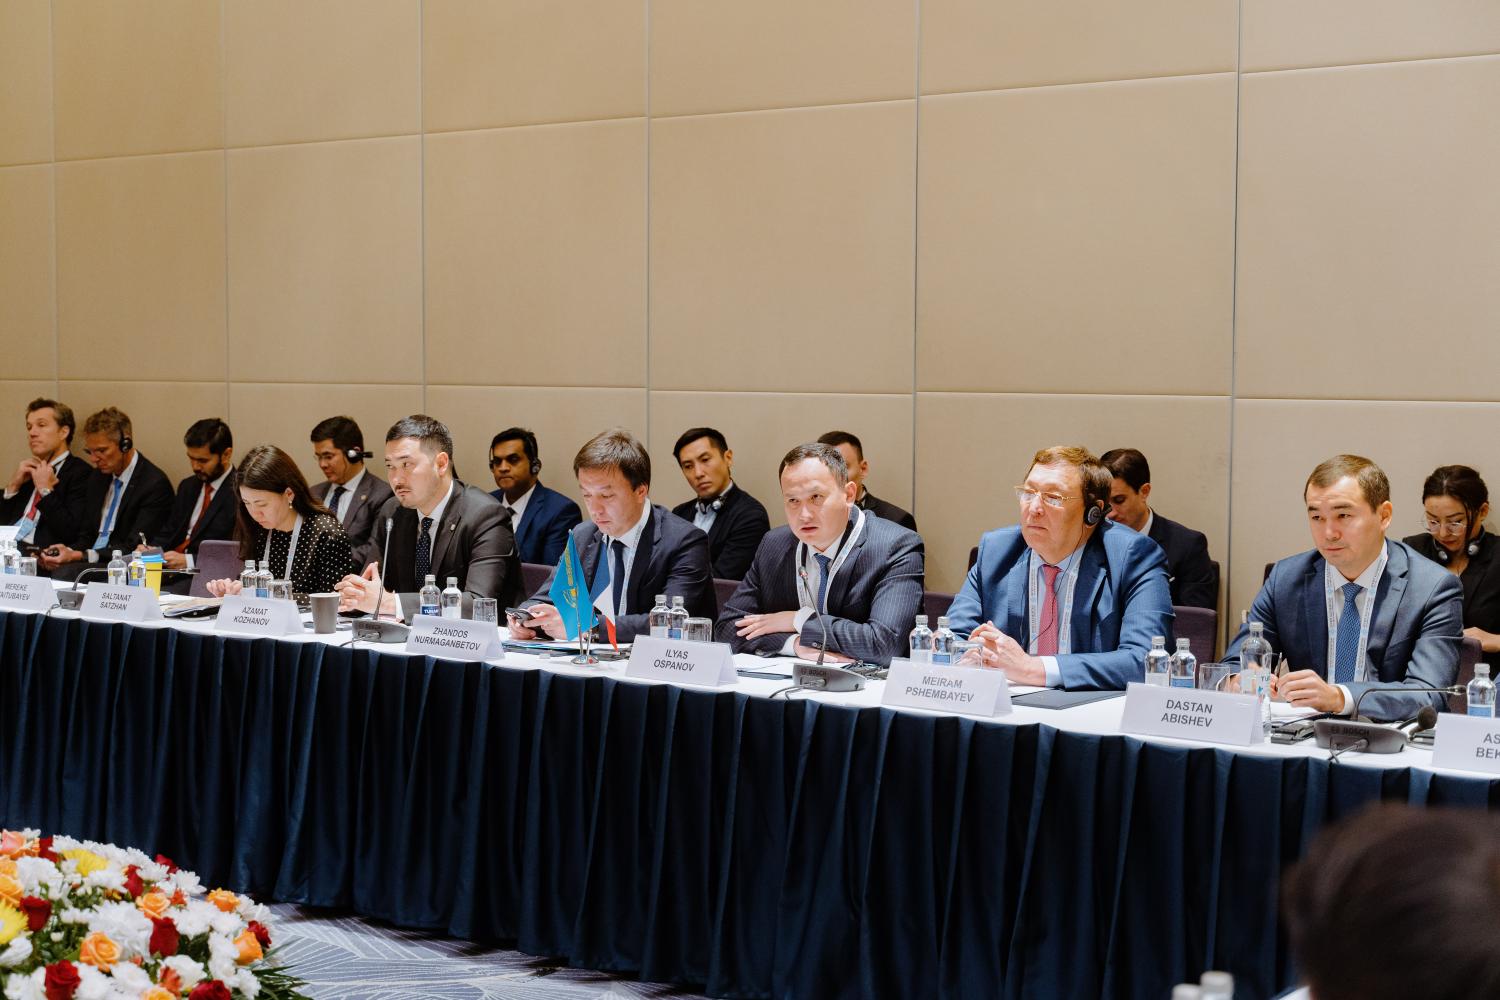 IMB Центр принял участие в Круглом столе Казахстанско-Французского бизнес-форума, который прошел в рамках Государственного визита Президента Французской Республики Эммануэля Макрона в Республику Казахстан